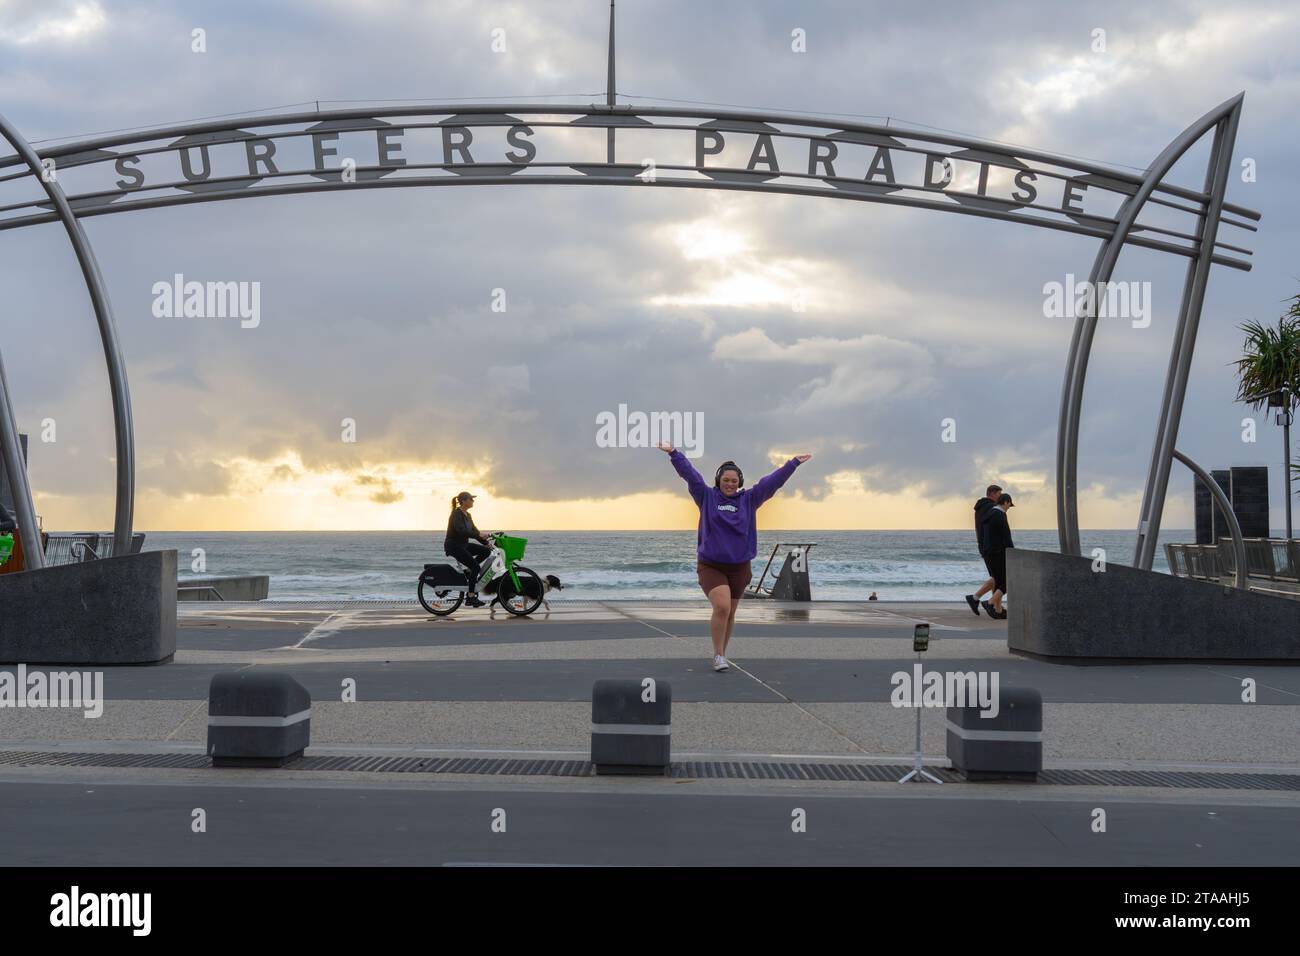 Surfers Paradise Australia; 23. September 2023; Surfers Paradise ikonisches skulpturales Schild am Ufer des Surfers Paradise stellt junge weibliche Touristen für Selfie als Frau dar Stockfoto